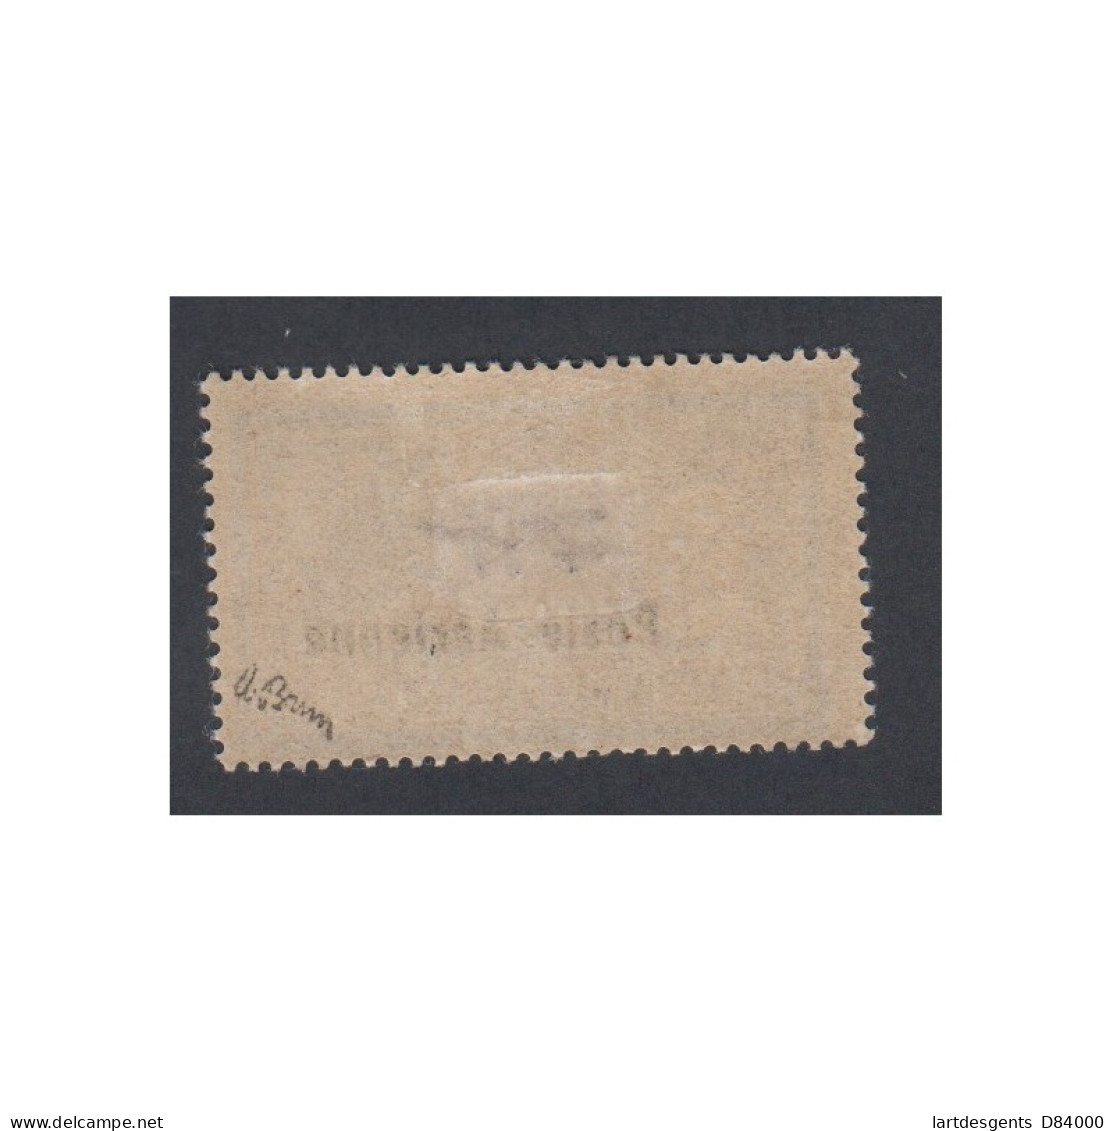 Timbre Poste Aérienne - Timbre N°2 - 1927 - Neuf* Avec Charnière Signé Brun - Cote 250 Euros- Lartdesgents - 1927-1959 Neufs